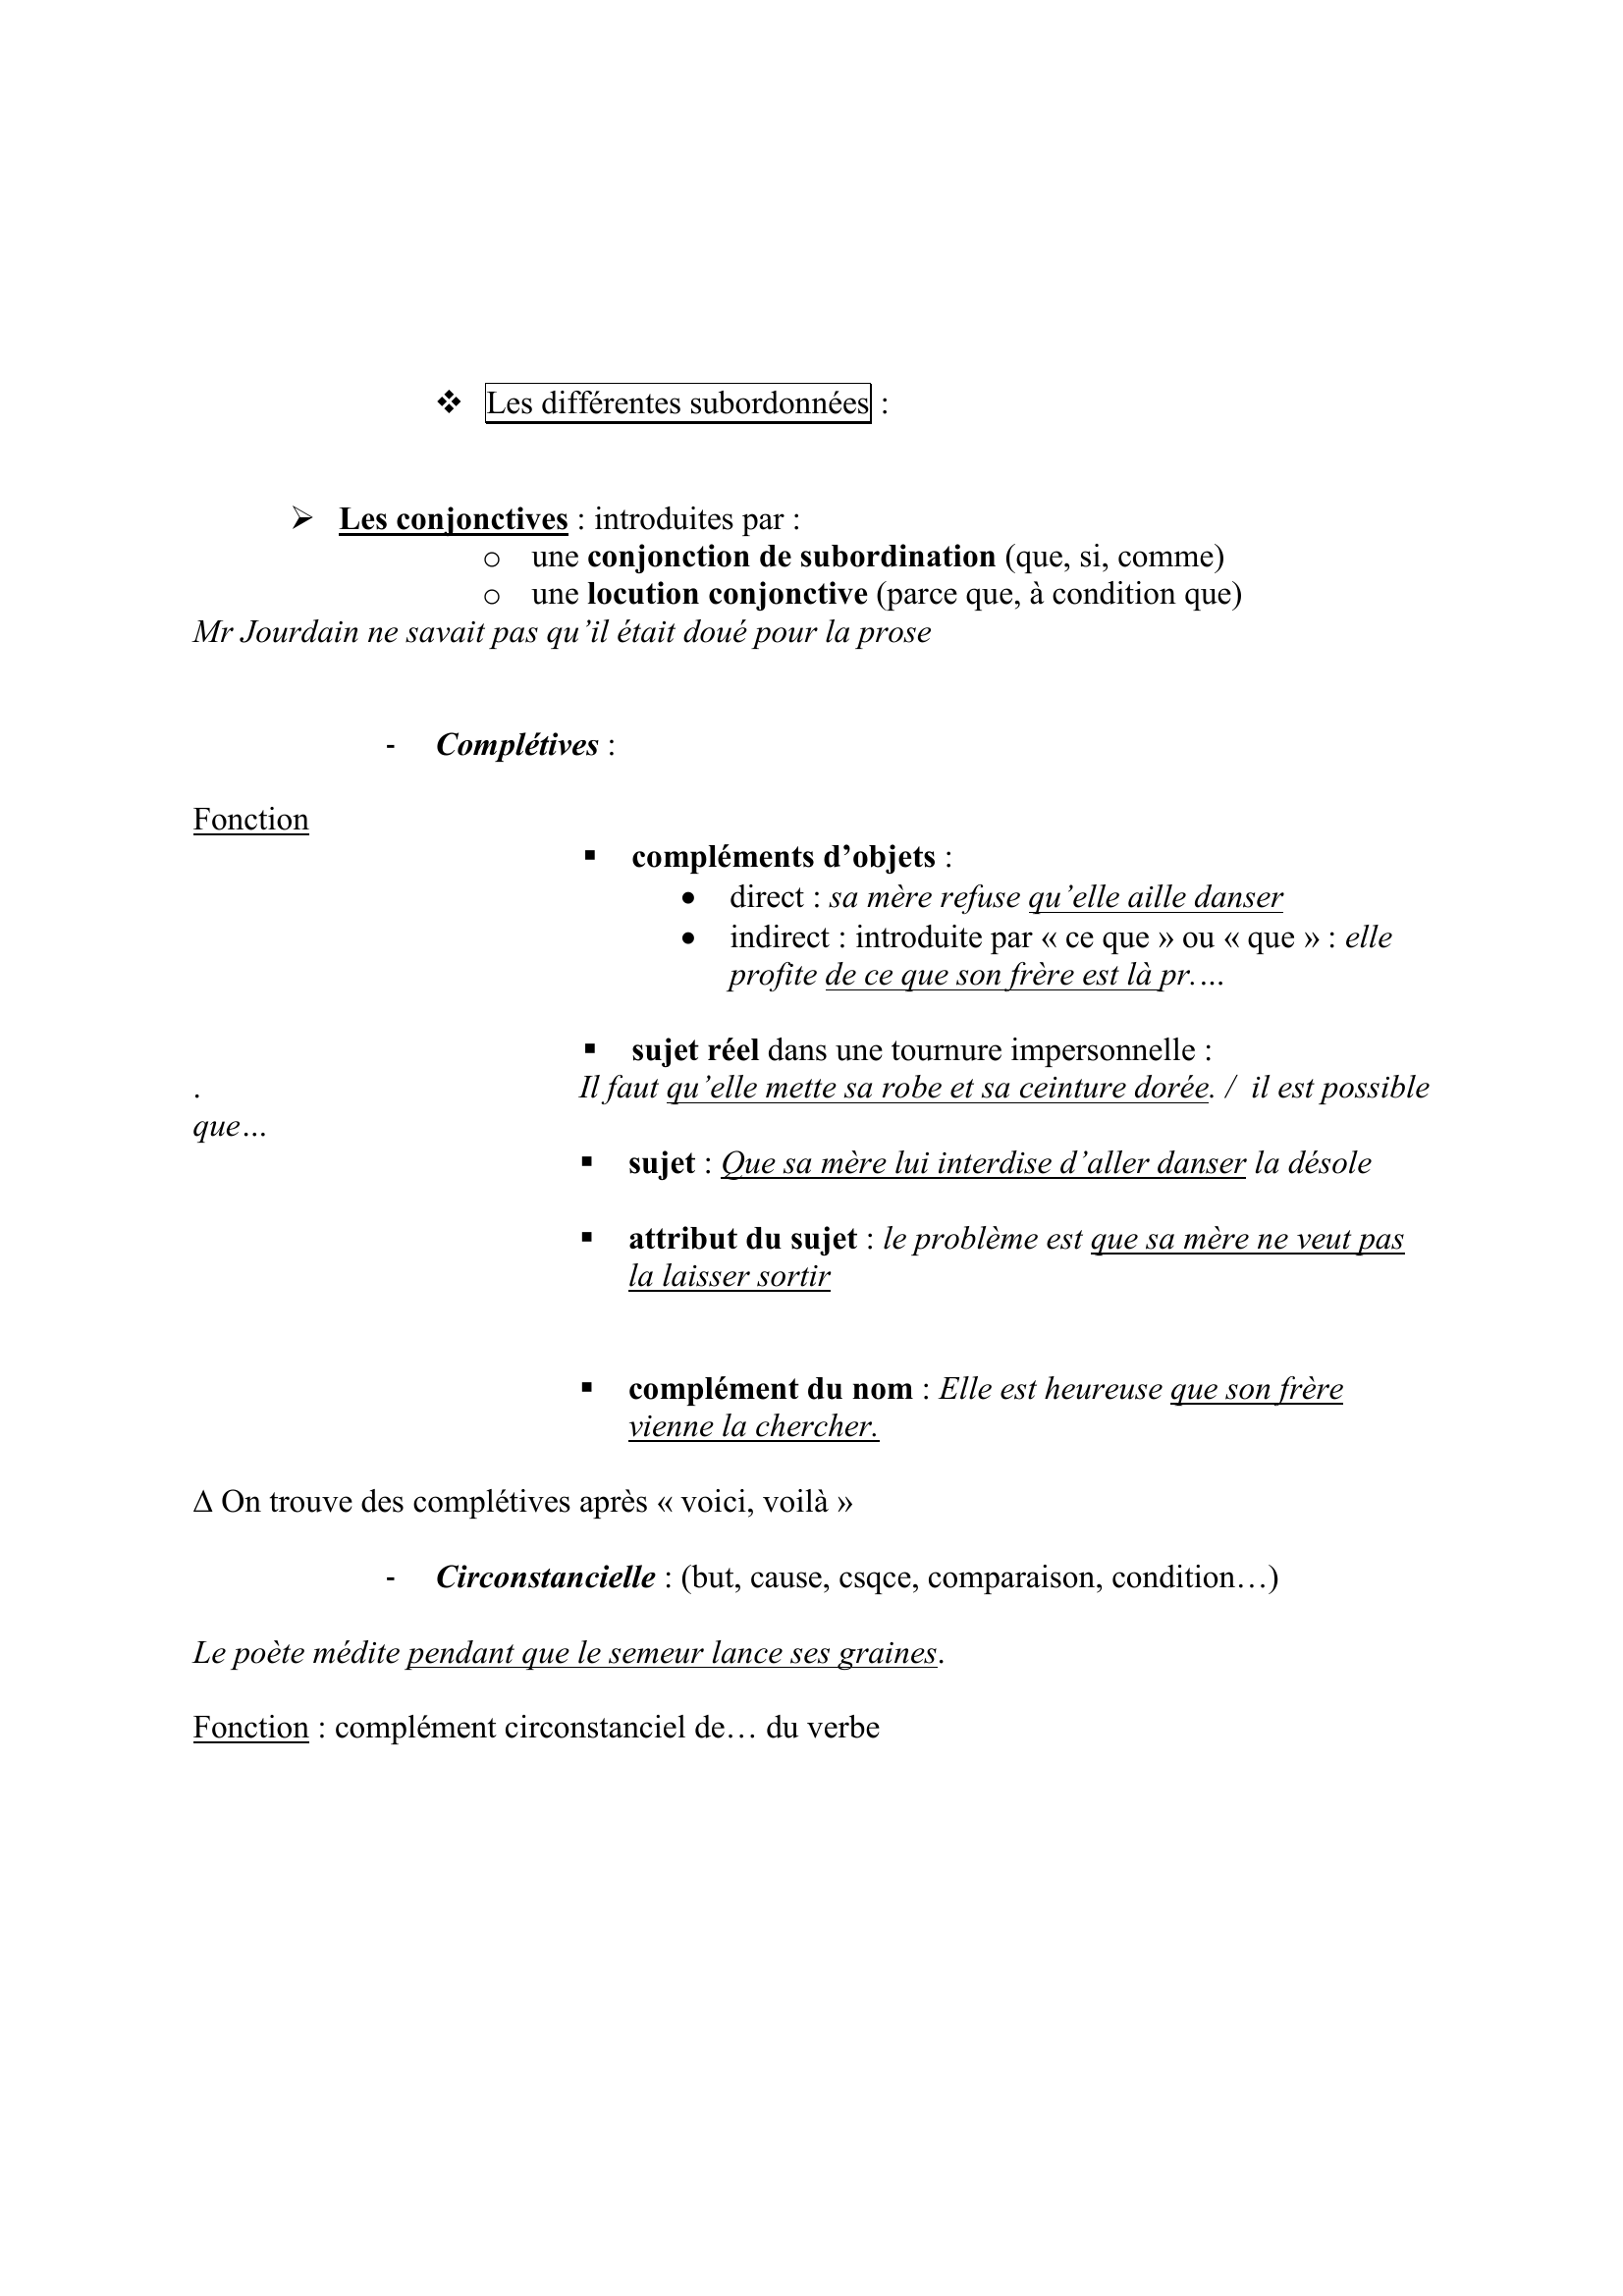 Prévisualisation du document LES PROPOSITIONS
Fiche construite par sylvain
Sylvain.